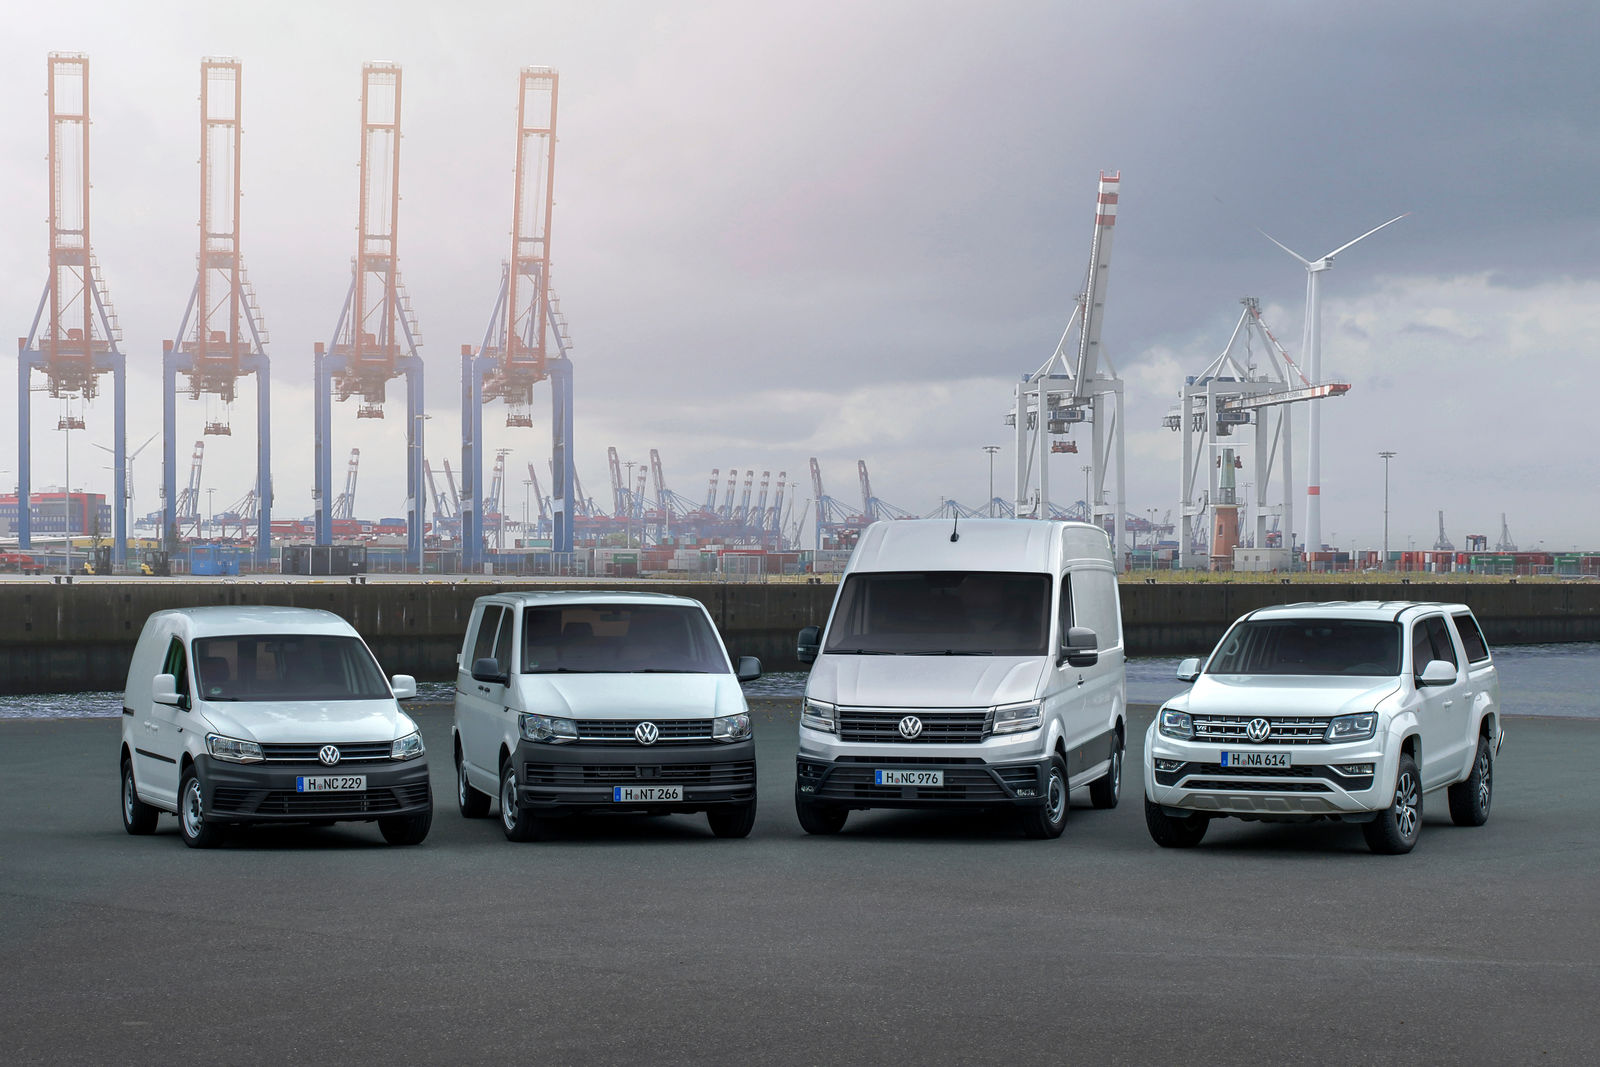 Th Indica meer Volkswagen Commercial Vehicles | Volkswagen Newsroom